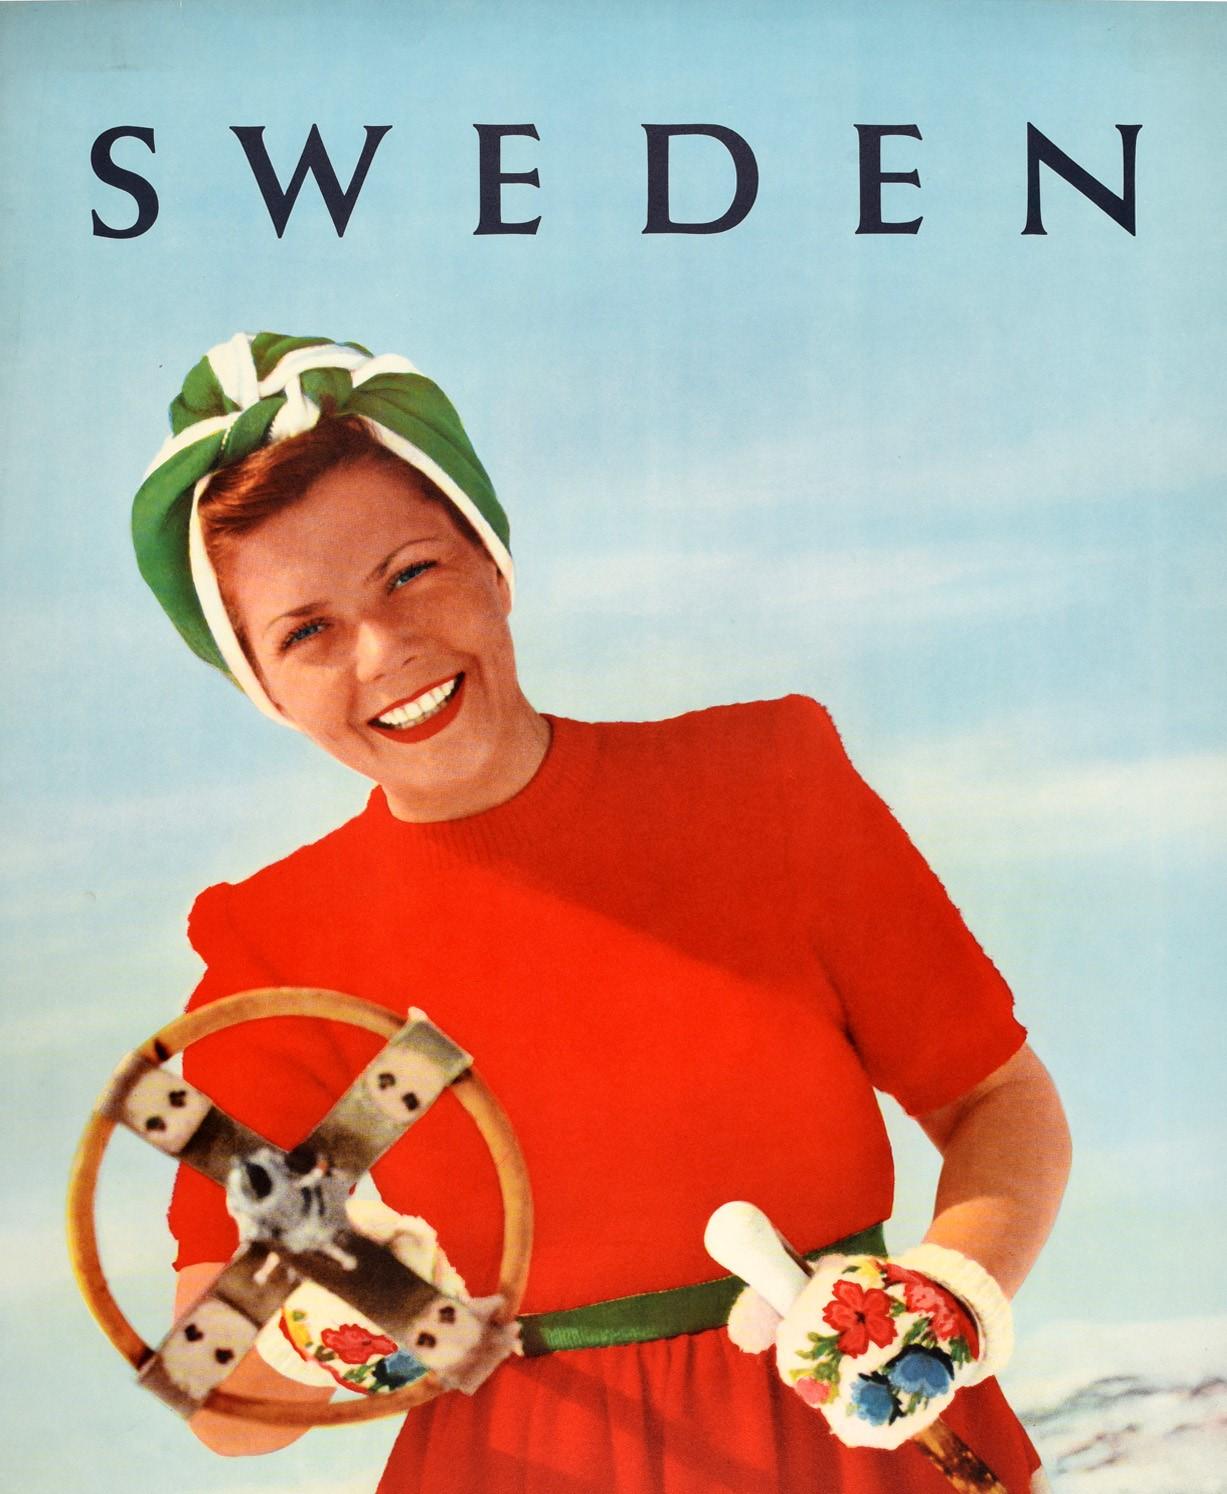 Original Vintage-Skireiseplakat für Schweden mit einem lustigen Bild einer lächelnden Dame in einem leuchtend rot-weiß-grünen Kleid mit Kopftuch und blumengemusterten Handschuhen, die auf einem verschneiten Berg steht und einen hölzernen Skistock